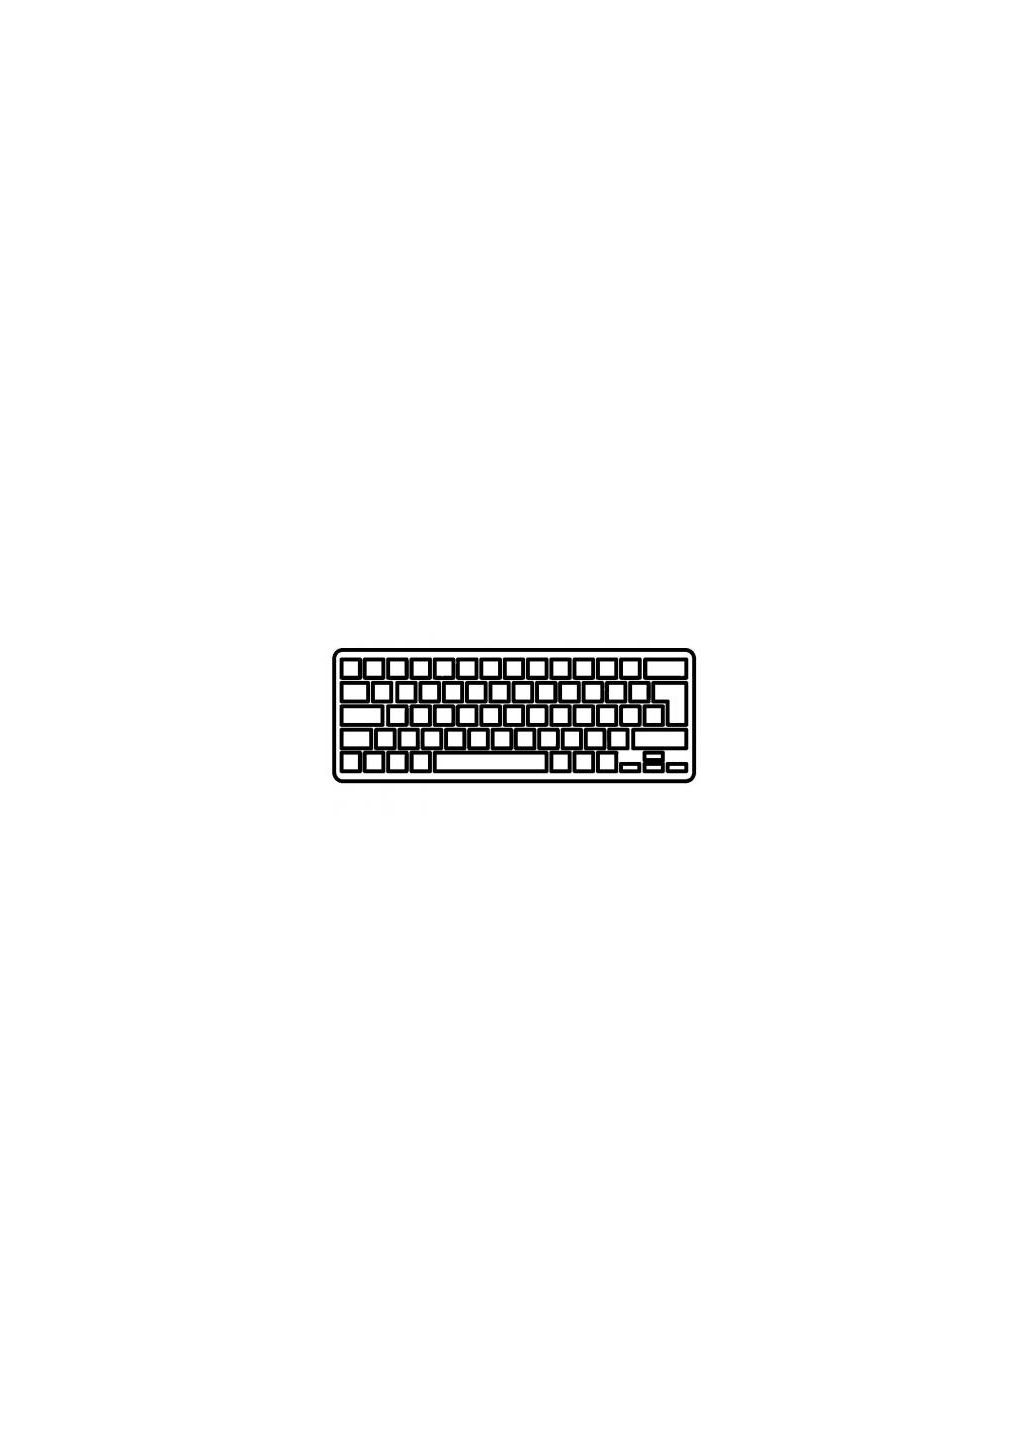 Клавиатура ноутбука Macbook Pro 15.4" A1286 (20092012) черн.без рамки RU/US (A43903) Apple macbook pro 15.4" a1286 (2009-2012) черн.без рамки (276707522)